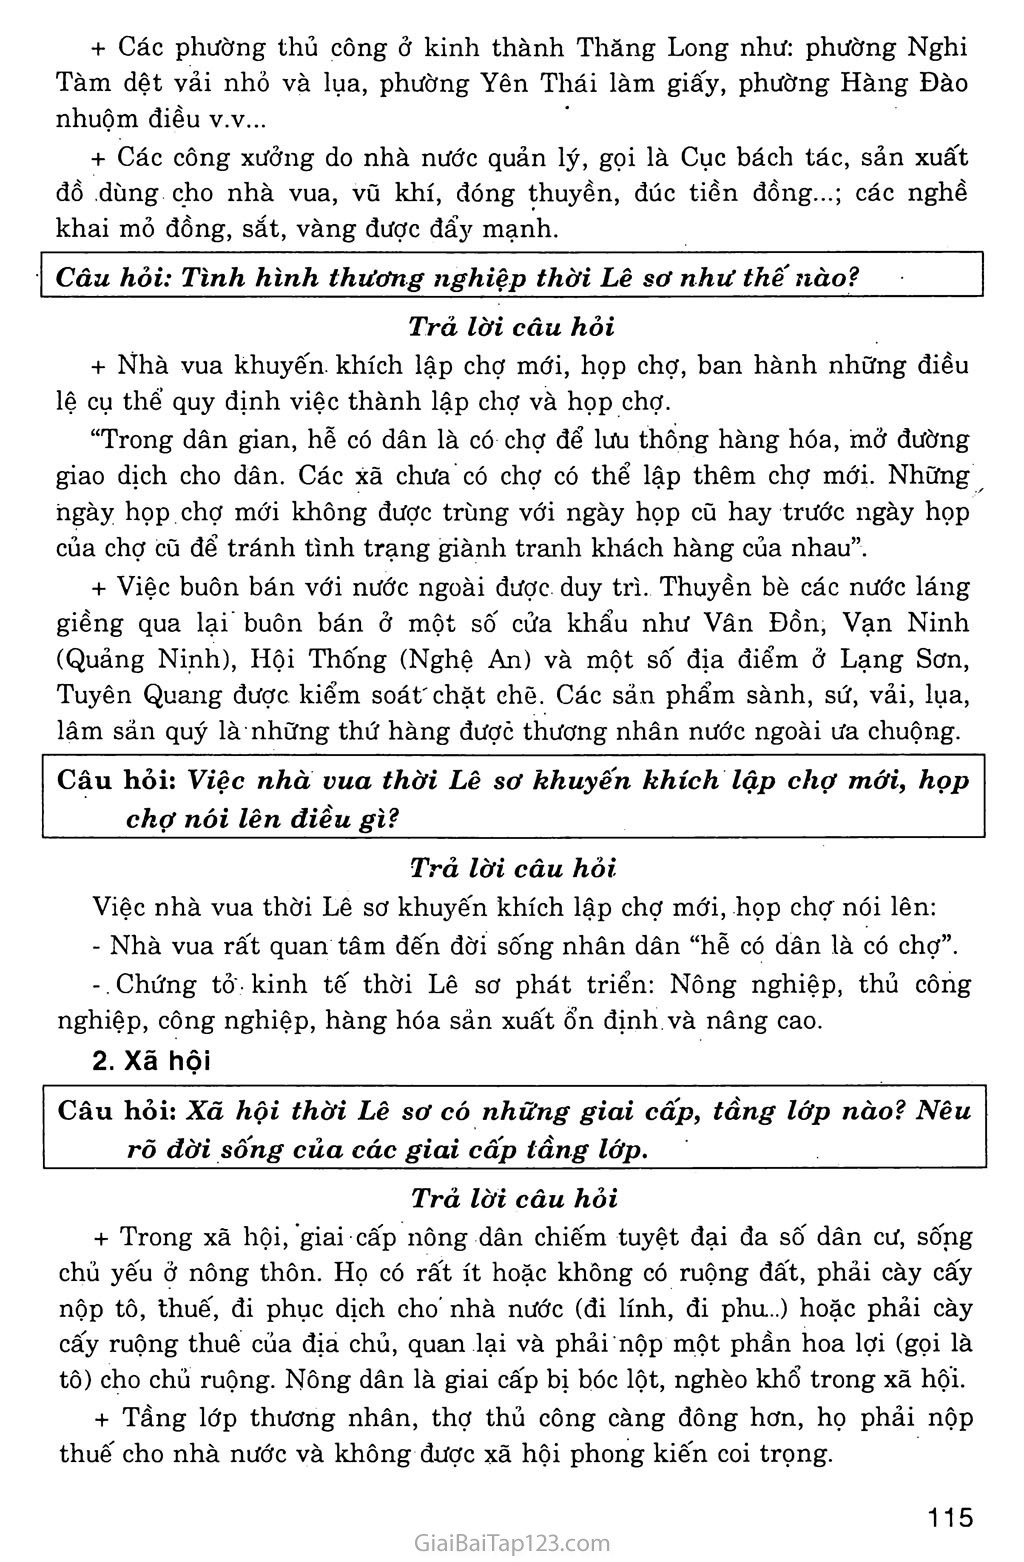 Bài 20: Nước Đại Việt thời Lê Sơ (1428 - 1527) trang 6